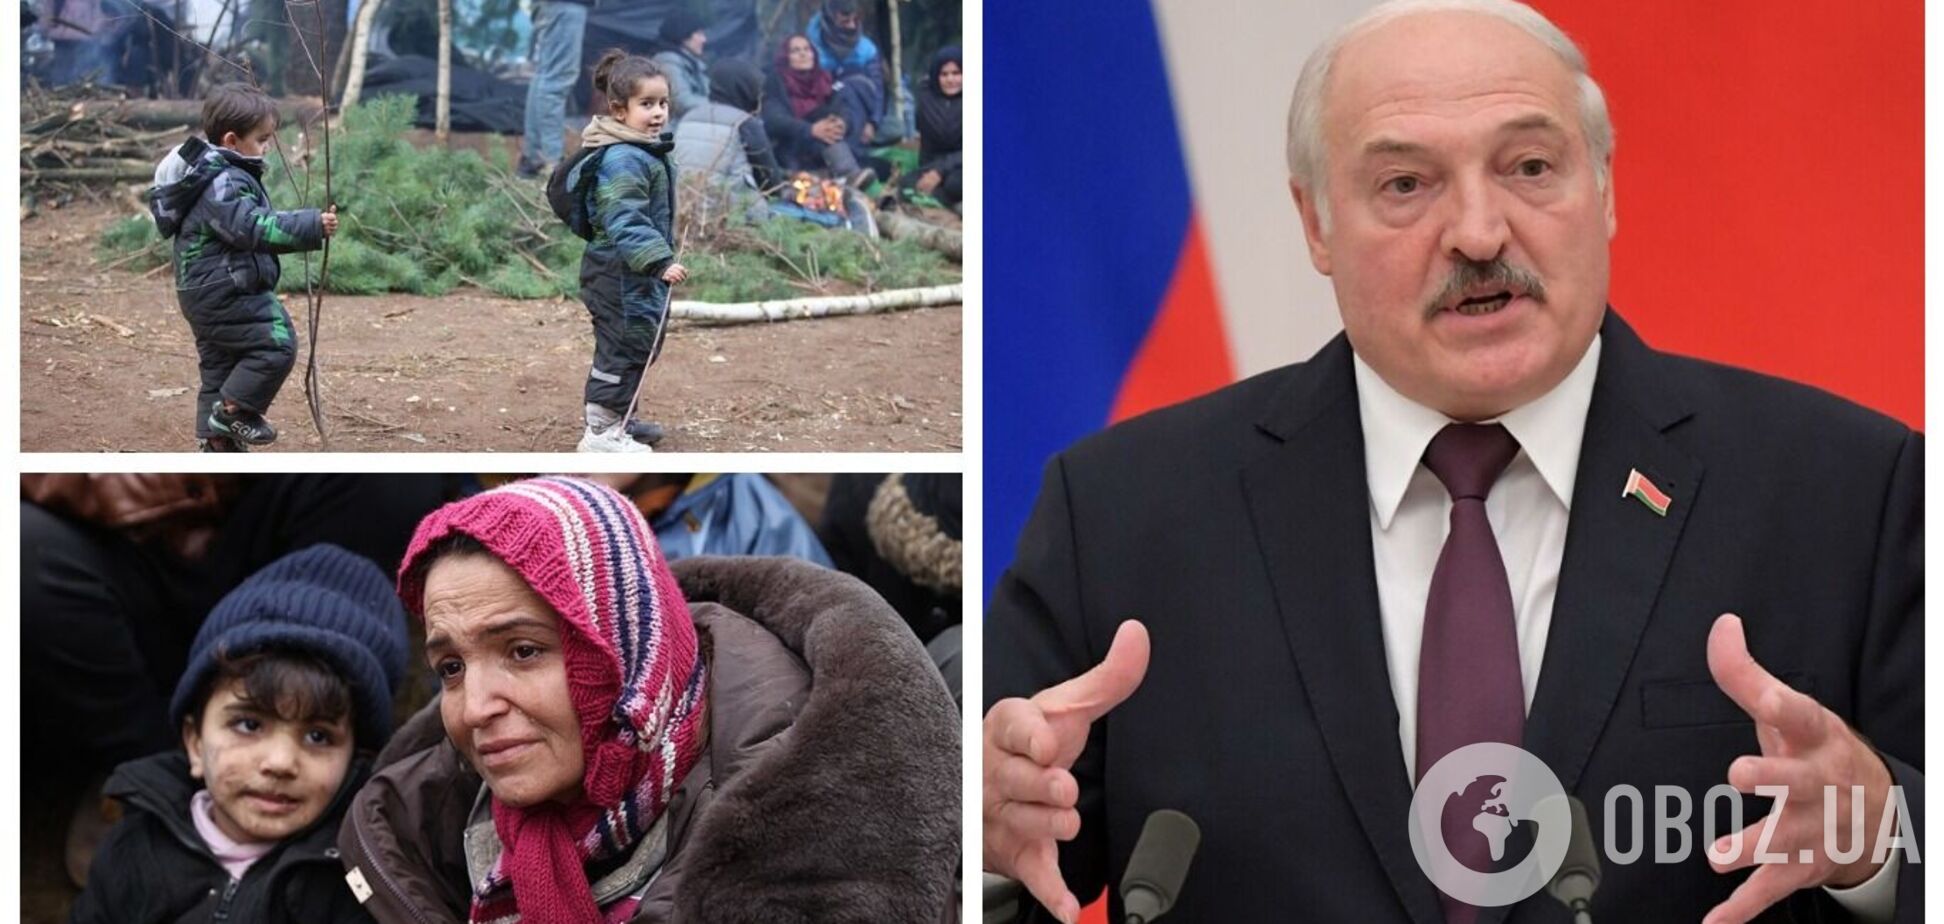 Лукашенко заявил, что готов доставить мигрантов самолетами 'Белавиа' в Мюнхен